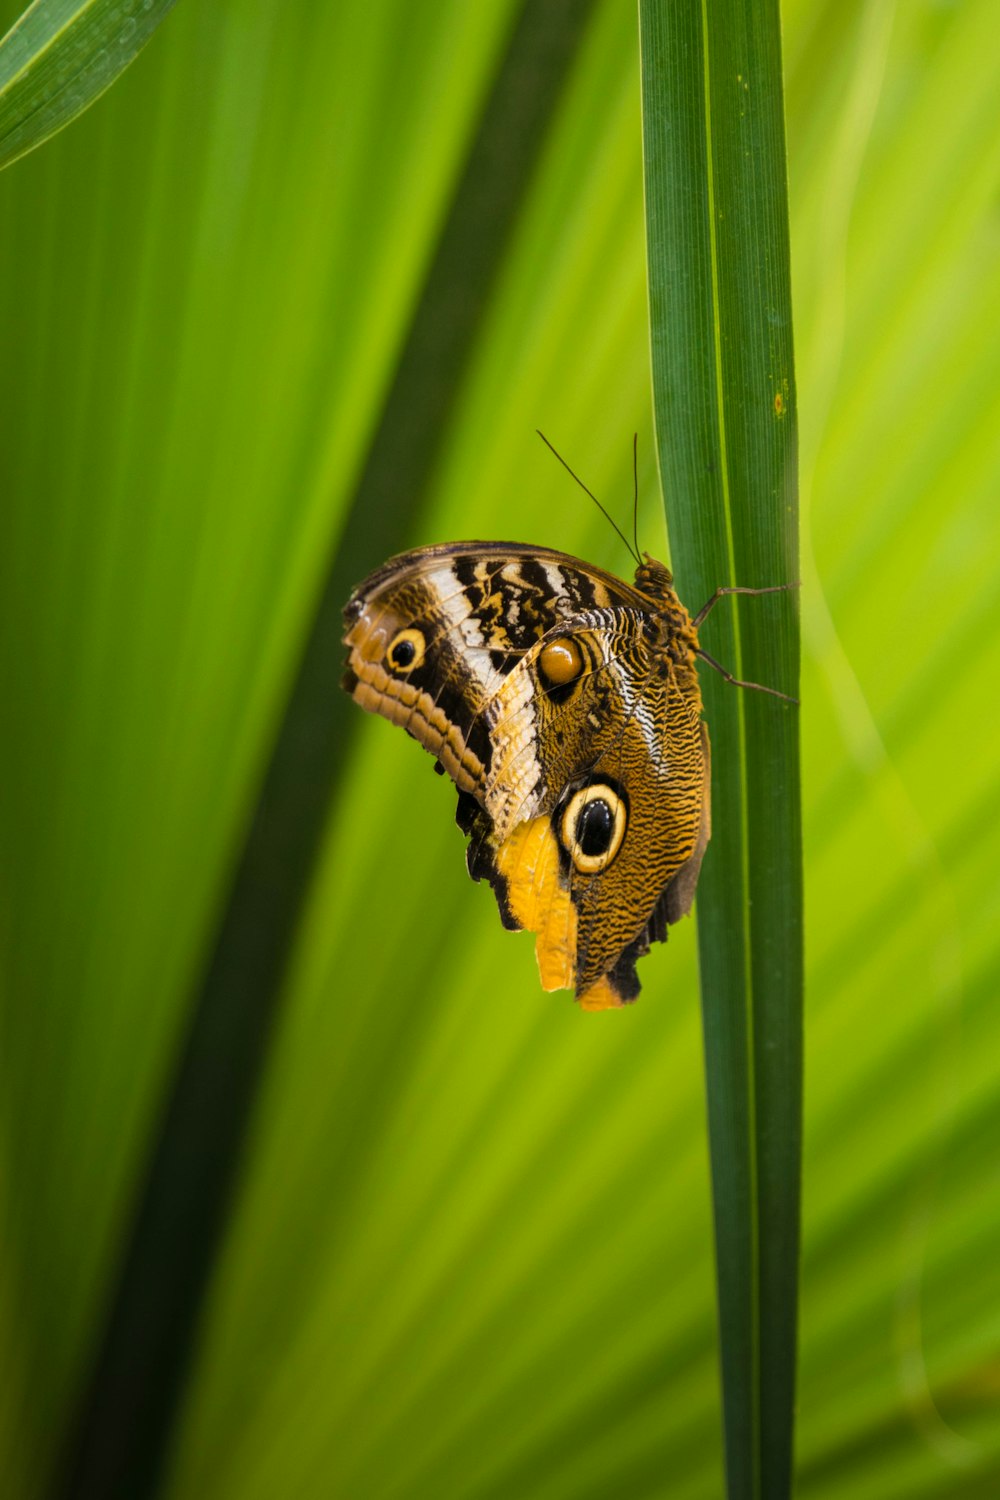 mariposa marrón y negra posada en hoja verde